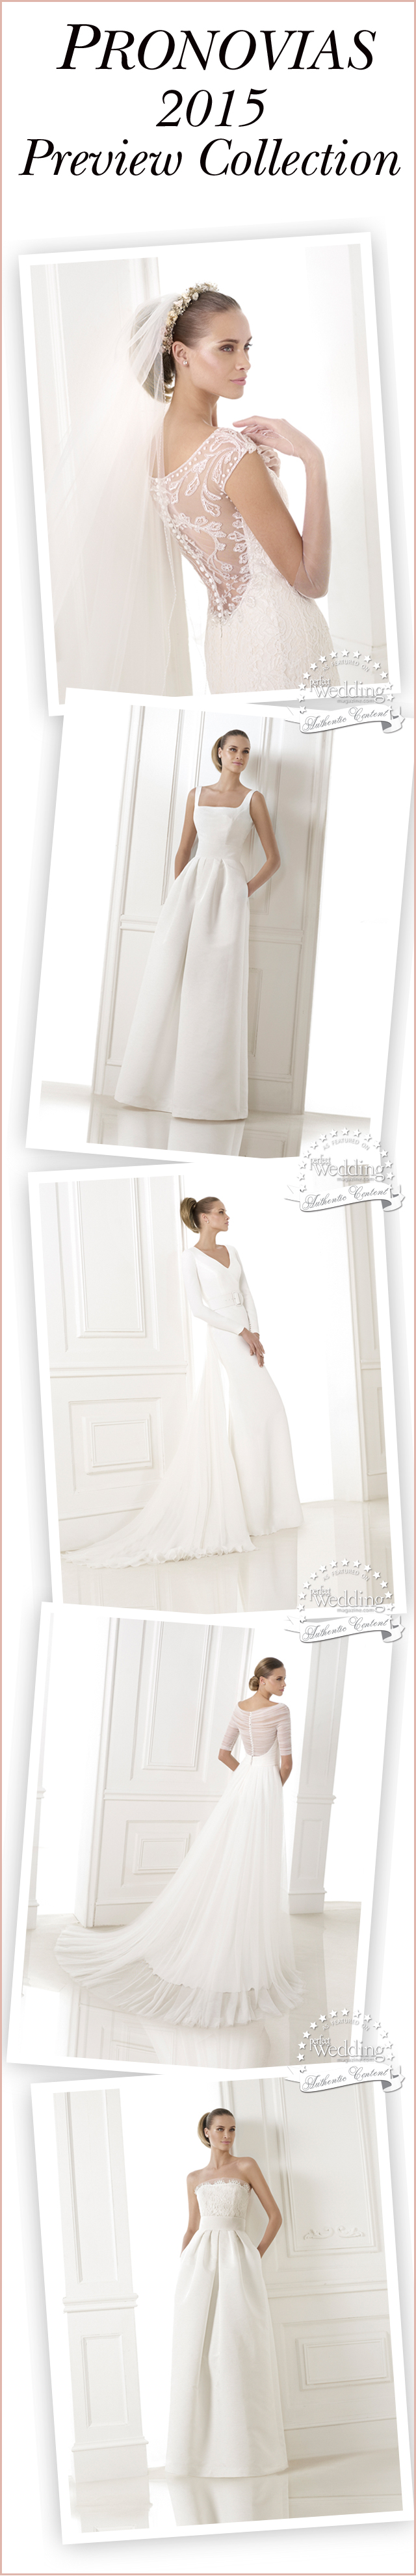 Pronovias, Atelier Pronovias, Pronovias 2015 Preview collection, Perfect Wedding Magazine, Perfect wedding blog, 2015 Bridal Fashion